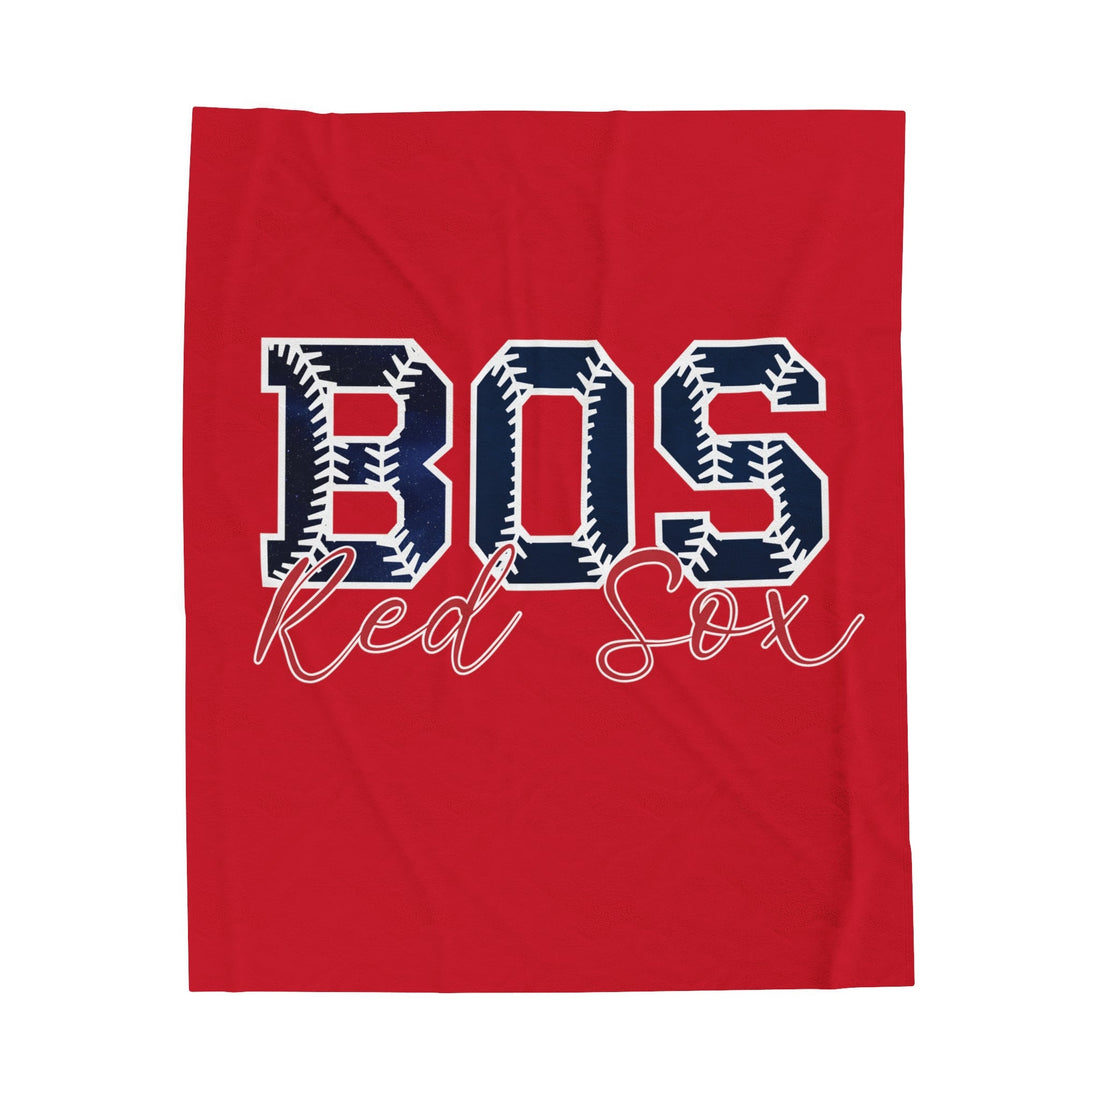 Boston Baseball Blanket - All Over Prints - Positively Sassy - Boston Baseball Blanket